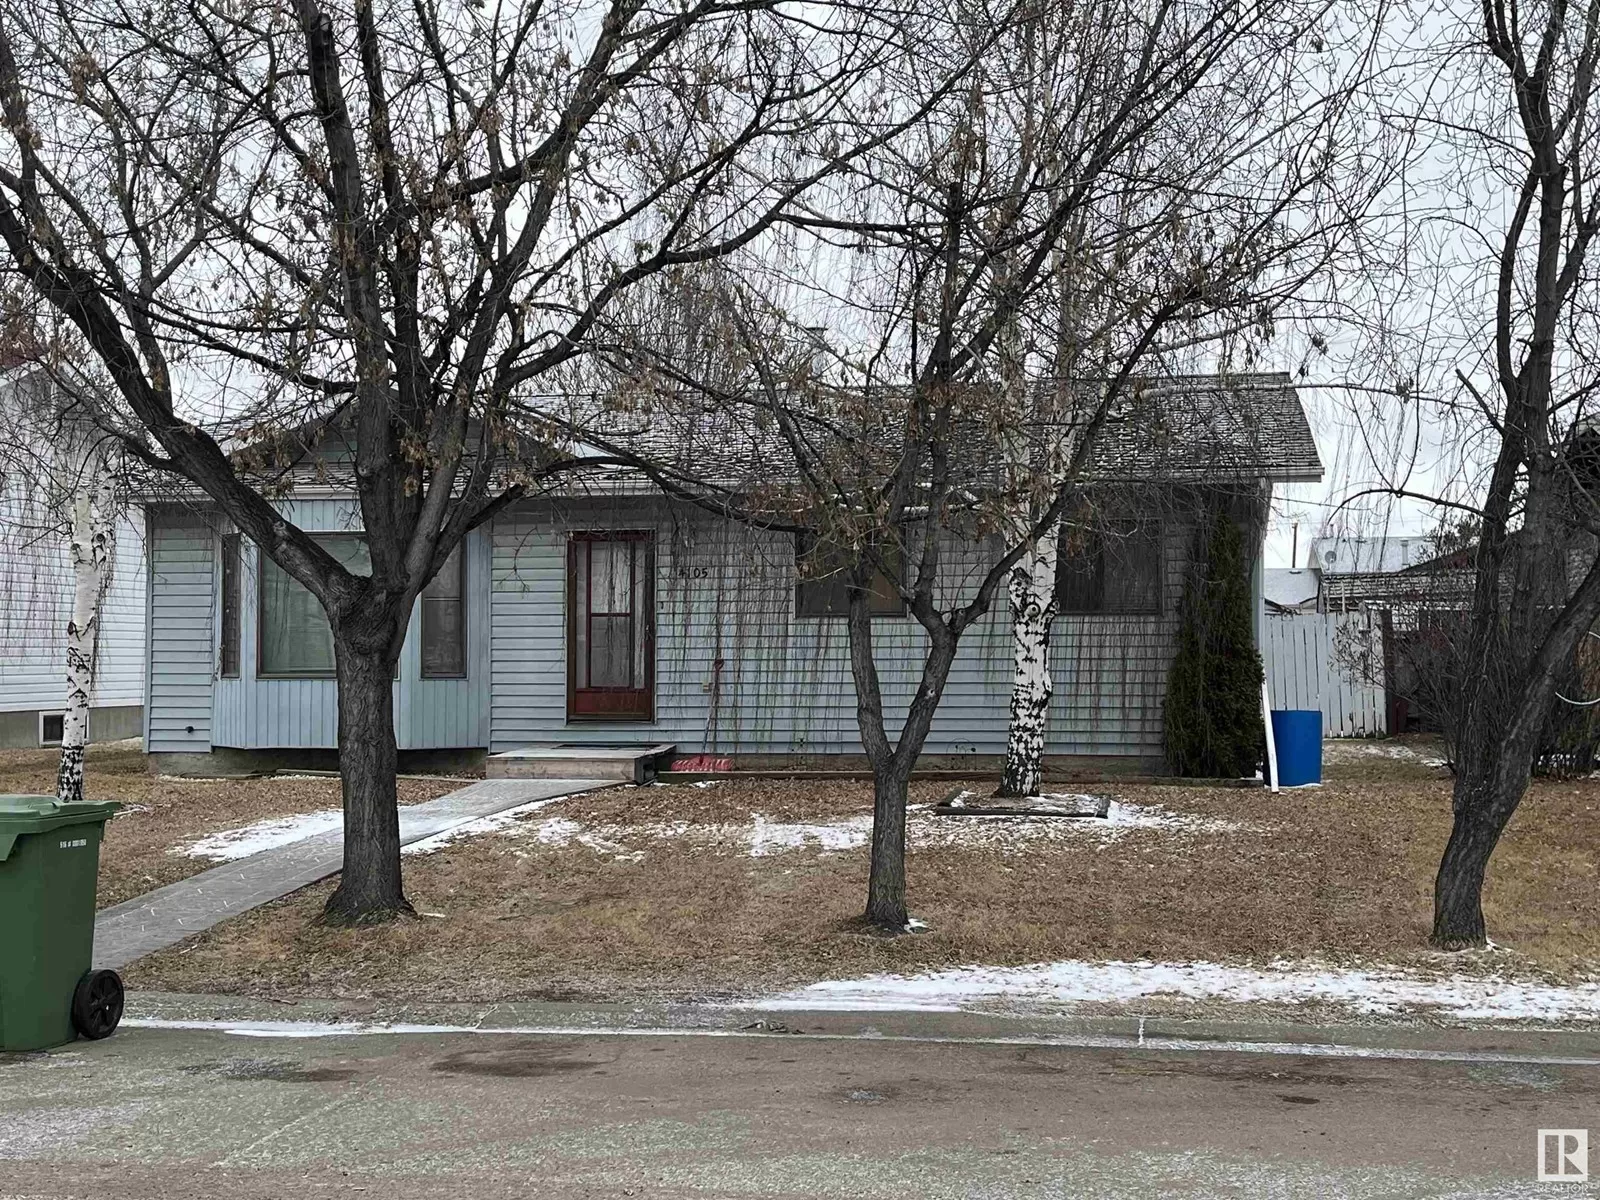 House for rent: 4105 49 Ave, Bonnyville Town, Alberta T9N 2G7